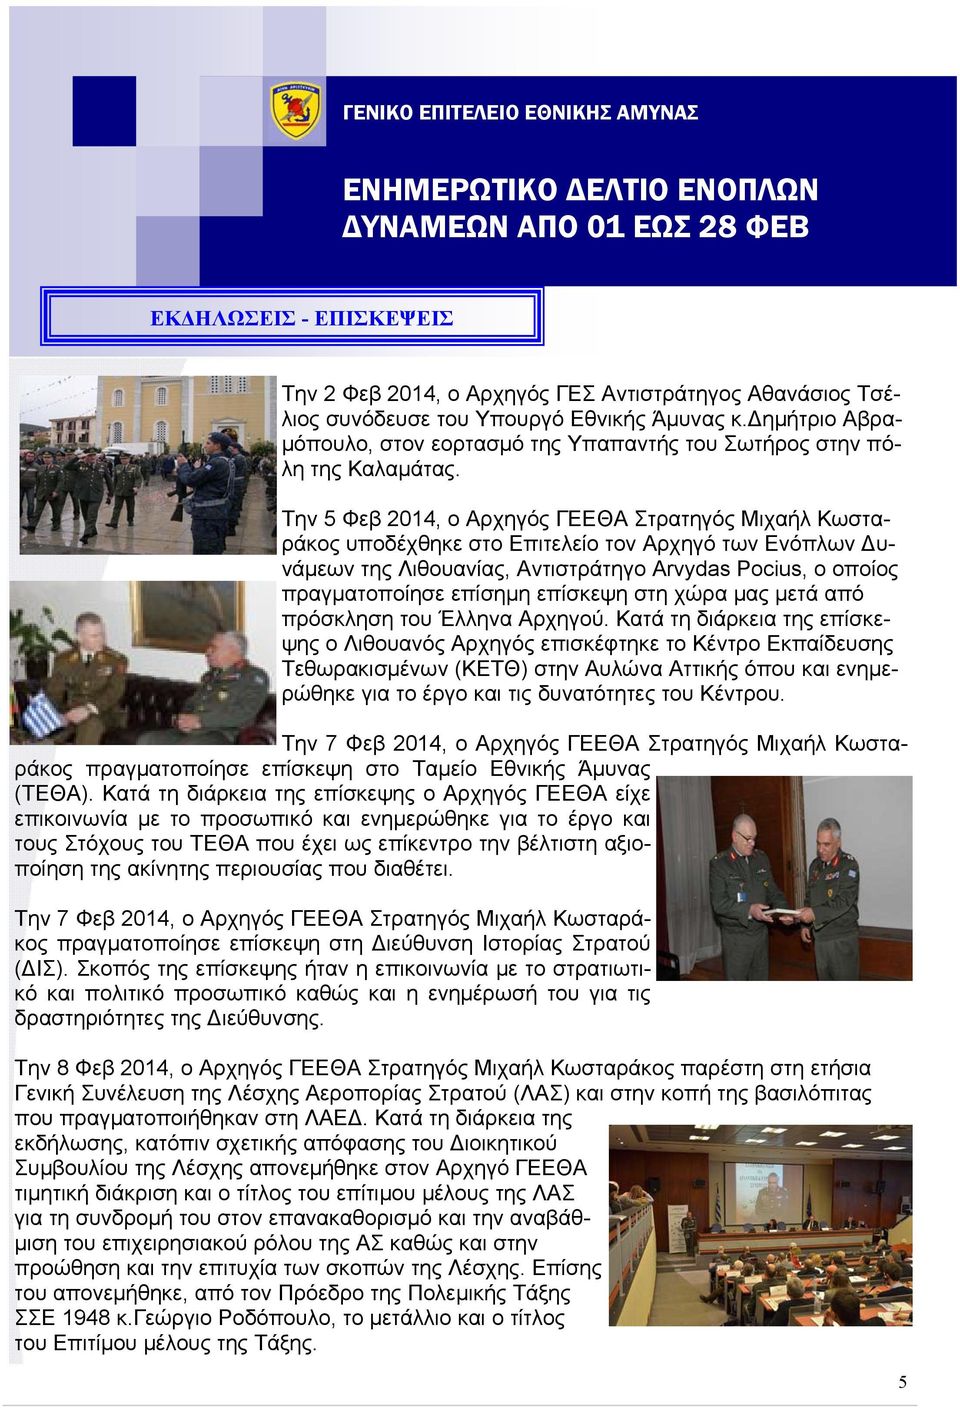 Tην 5 Φεβ 2014, ο Αρχηγός ΓΕΕΘΑ Στρατηγός Μιχαήλ Κωσταράκος υποδέχθηκε στο Επιτελείο τον Αρχηγό των Ενόπλων υνάμεων της Λιθουανίας, Αντιστράτηγο Arvydas Pocius, o οποίος πραγματοποίησε επίσημη